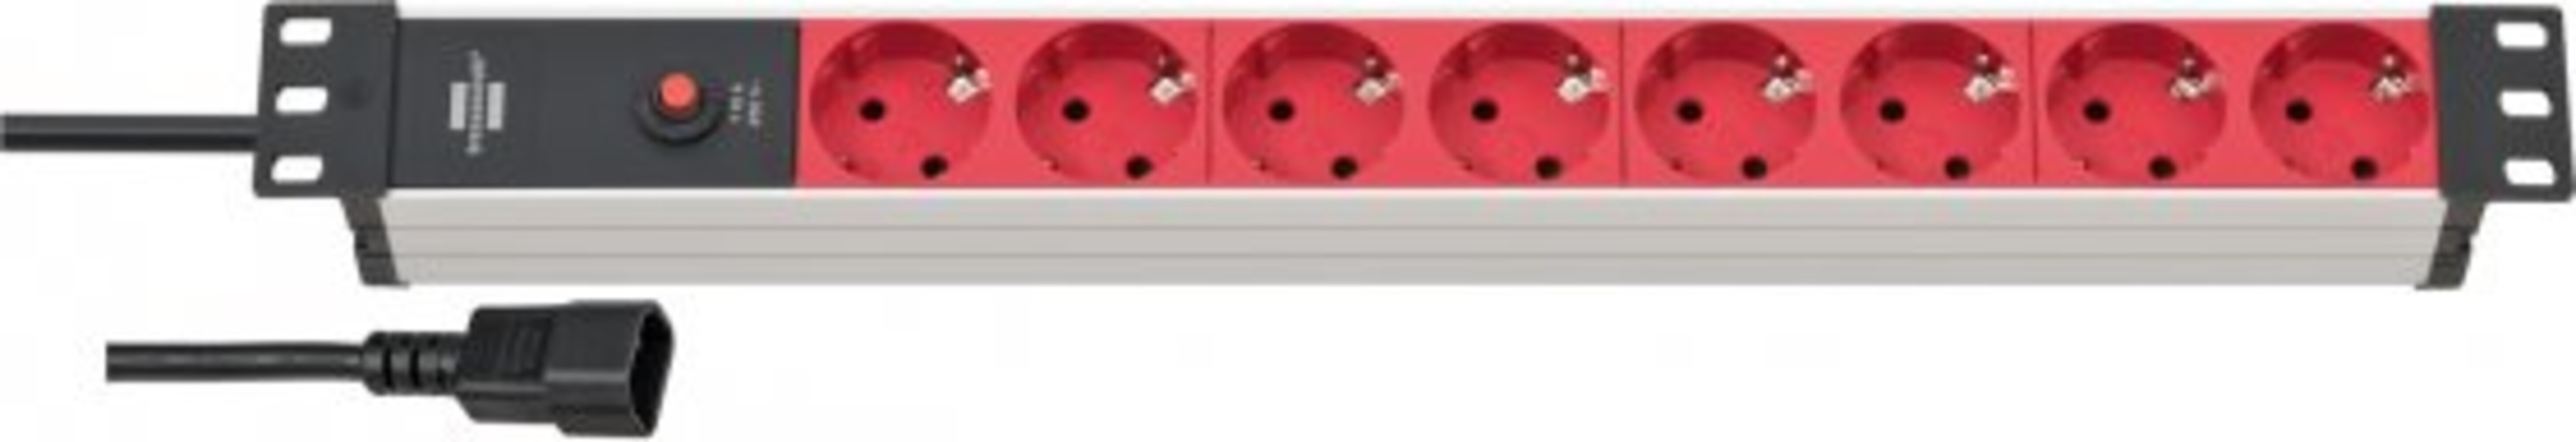 Hochwertige silber-rot Steckdosen von Brennenstuhl Alu Line 19 Steckdosenleiste